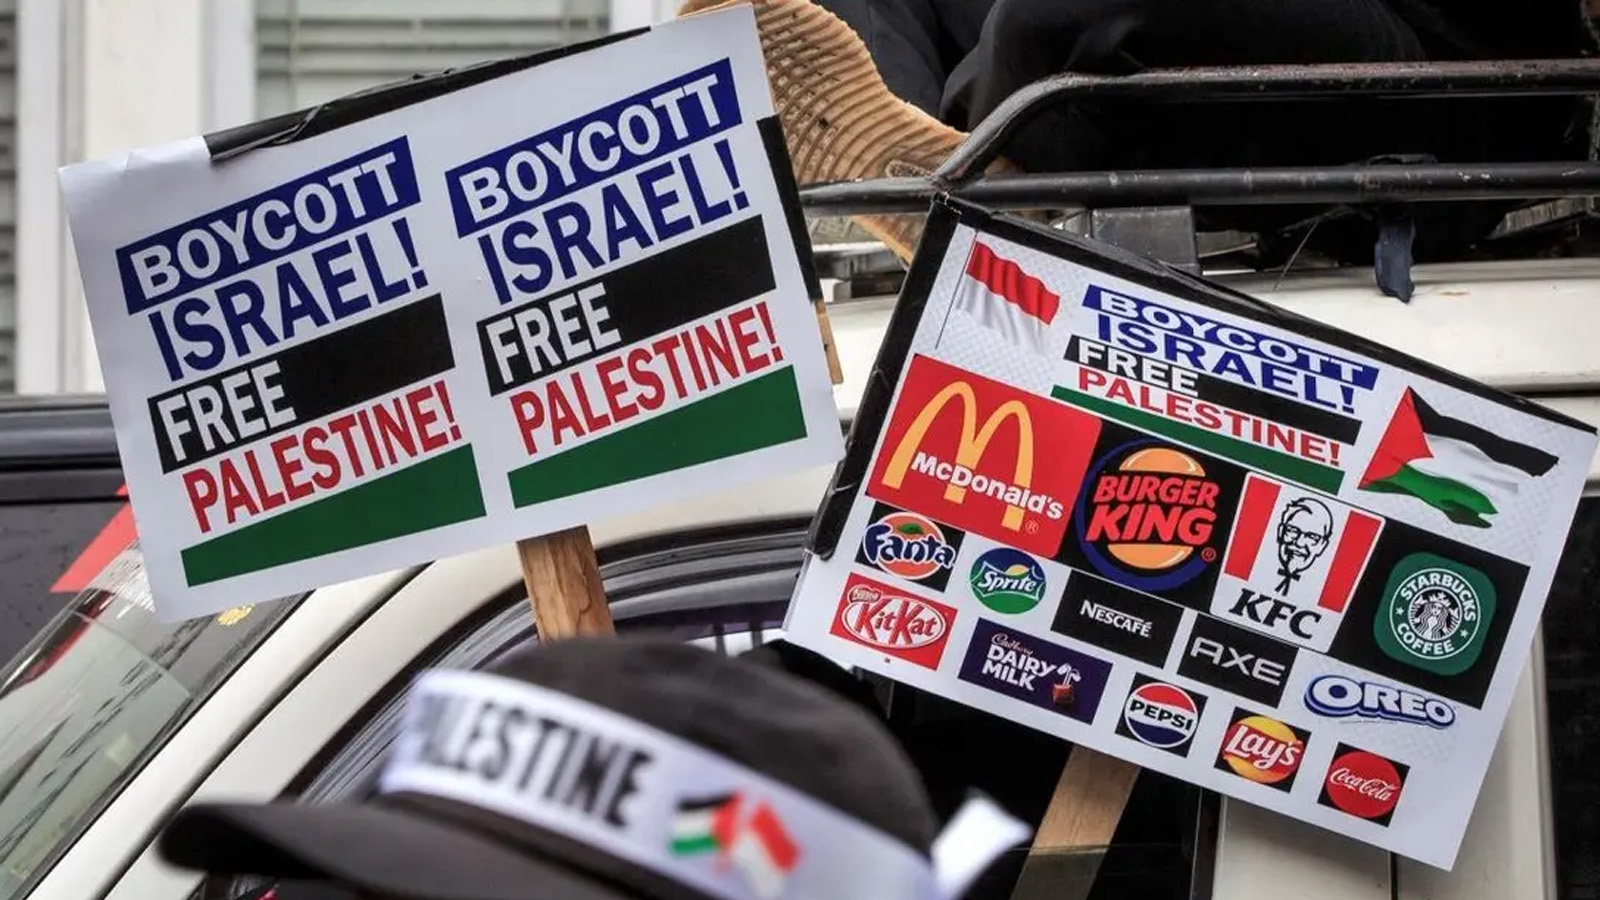 متظاهرون يحملون لافتات تطالب بمقاطعة المنتجات والشركات المؤيدة لإسرائيل خلال مظاهرة لإظهار تضامنهم مع الشعب الفلسطيني في يوجياكارتا. 11 نوفمبر(تشرين الثاني) 2023